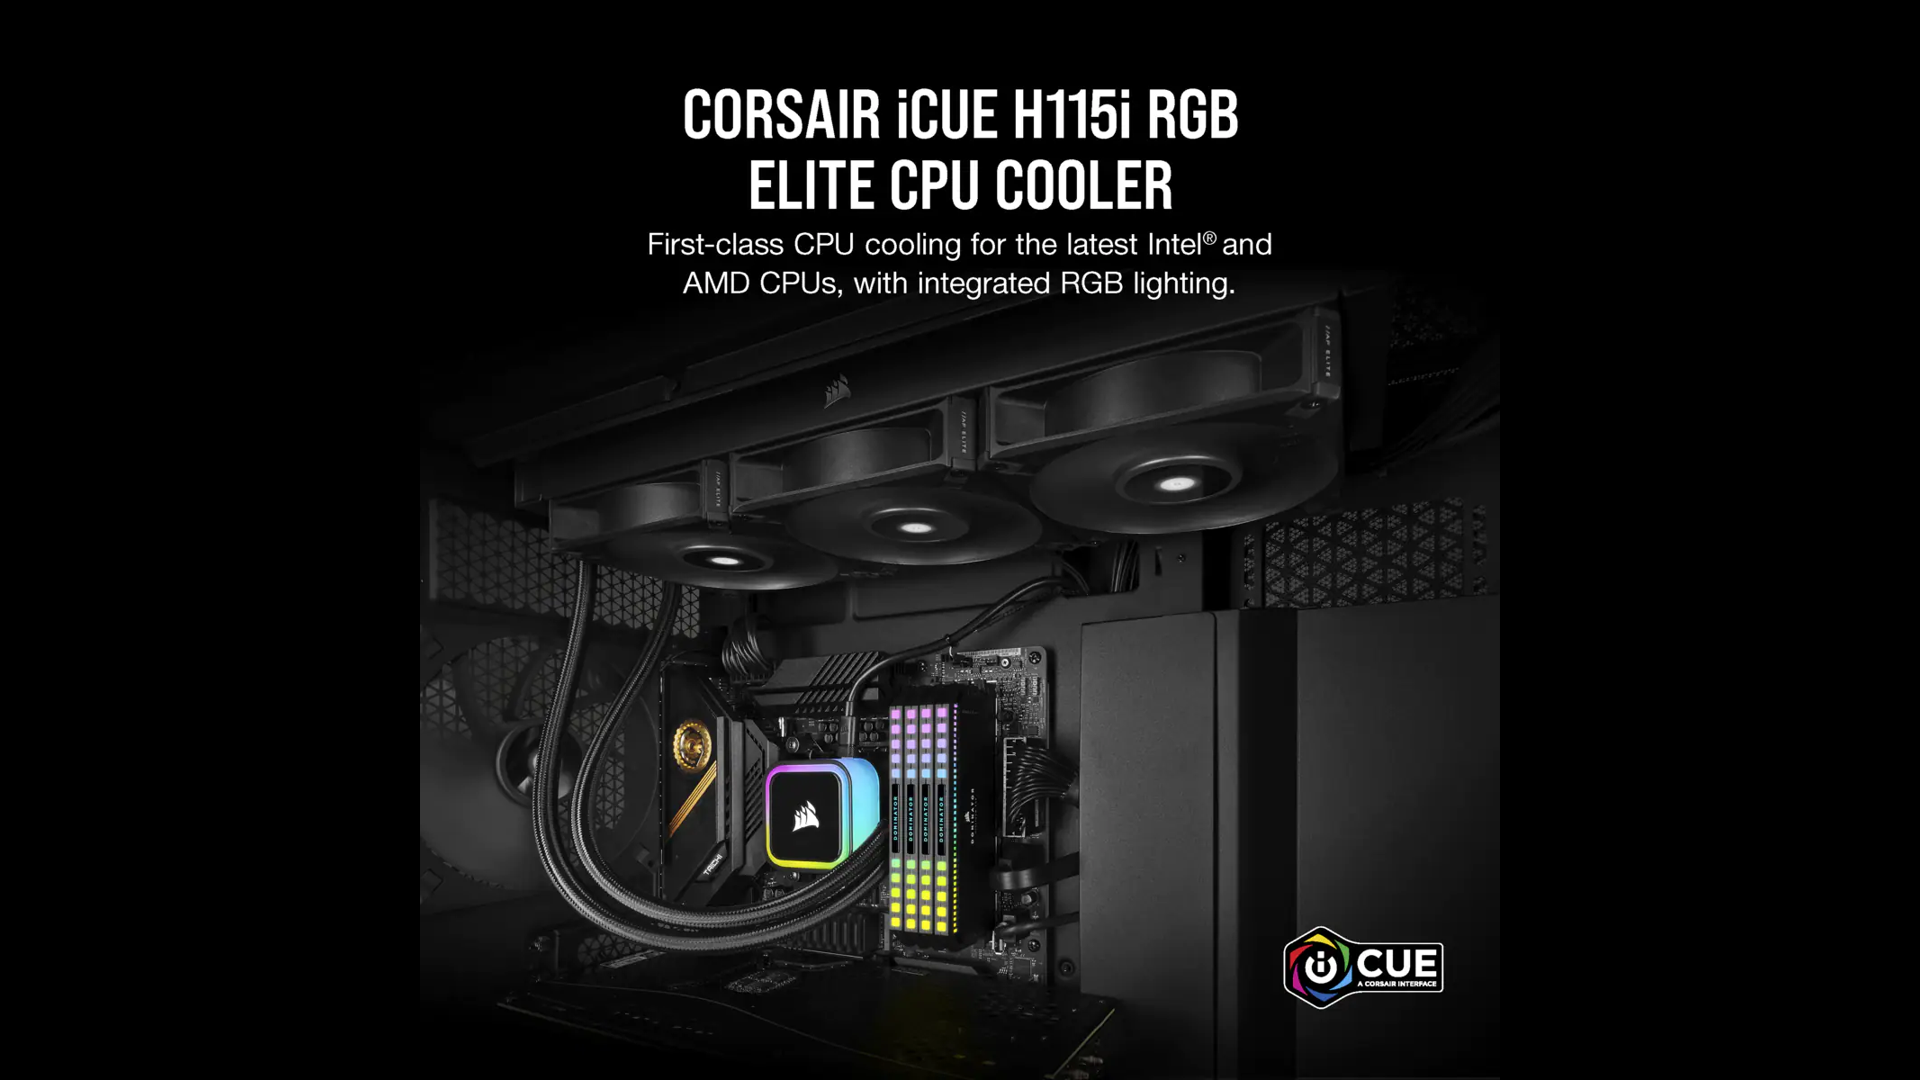 CORSAIR iCUE H115i RGB ELITE LIQUID 280mm RADIATOR LIQUID CPU COOLER